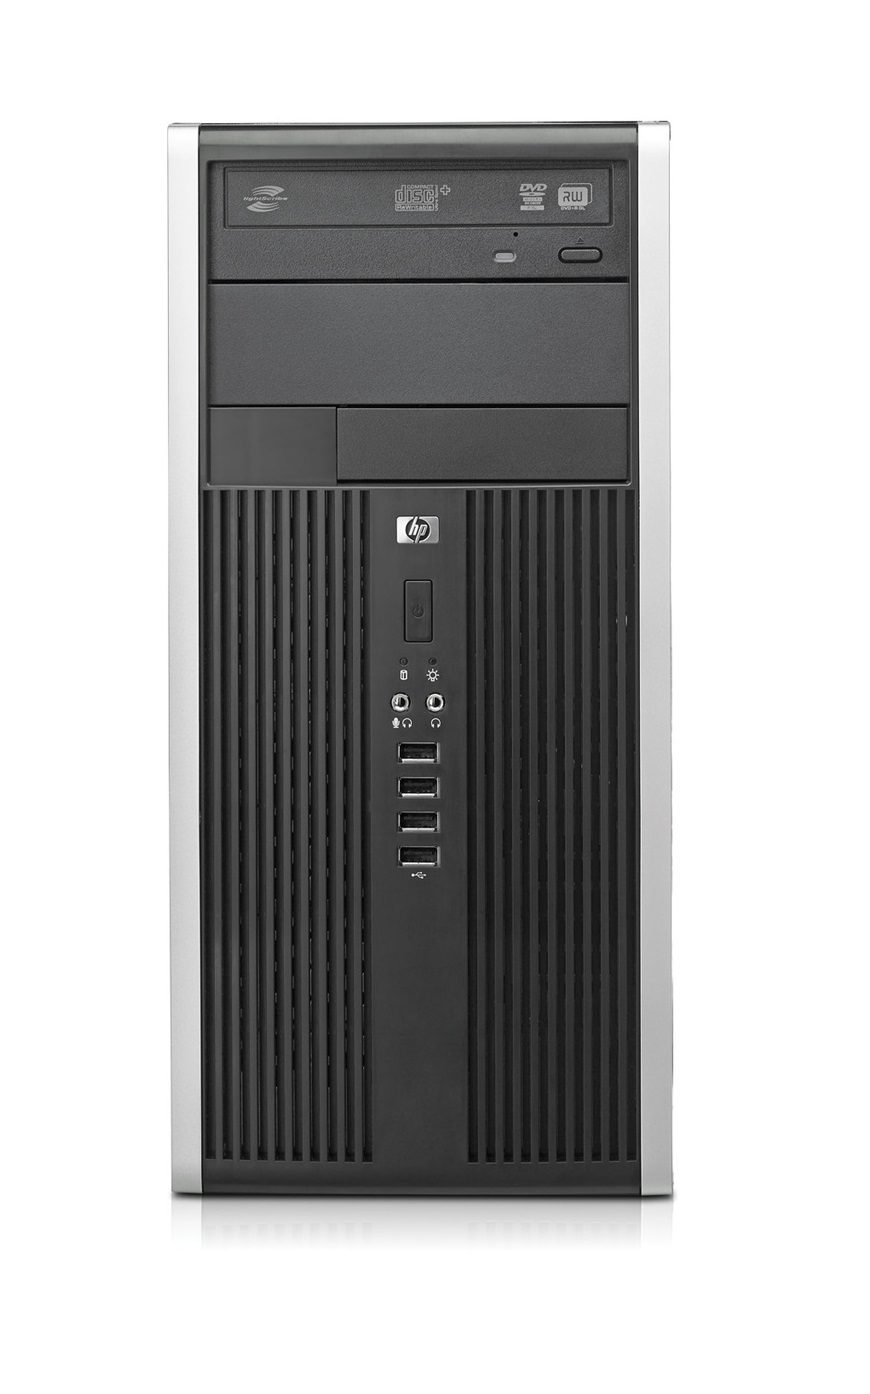 HP Compaq Pro 6305 MT | AMD A4-5300B 3.4Ghz | Ram 4Gb | Hard Disk 500Gb | Windows 10 Pro